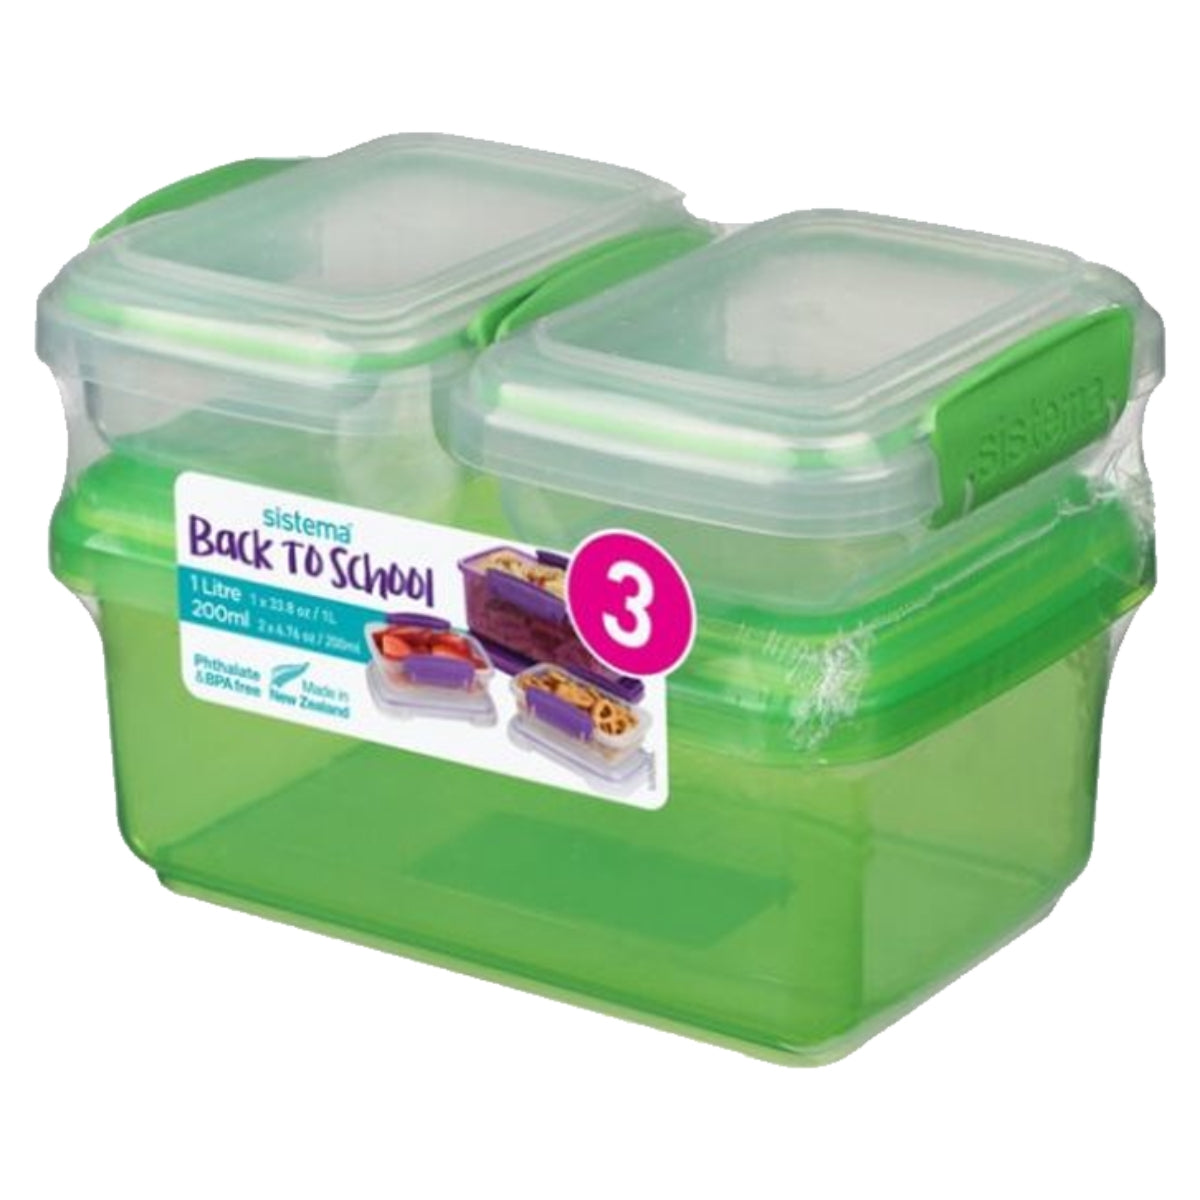 מארז Sistema Lunch - קופסת ליטר + 2 קופסאות 200 מל - ירוק